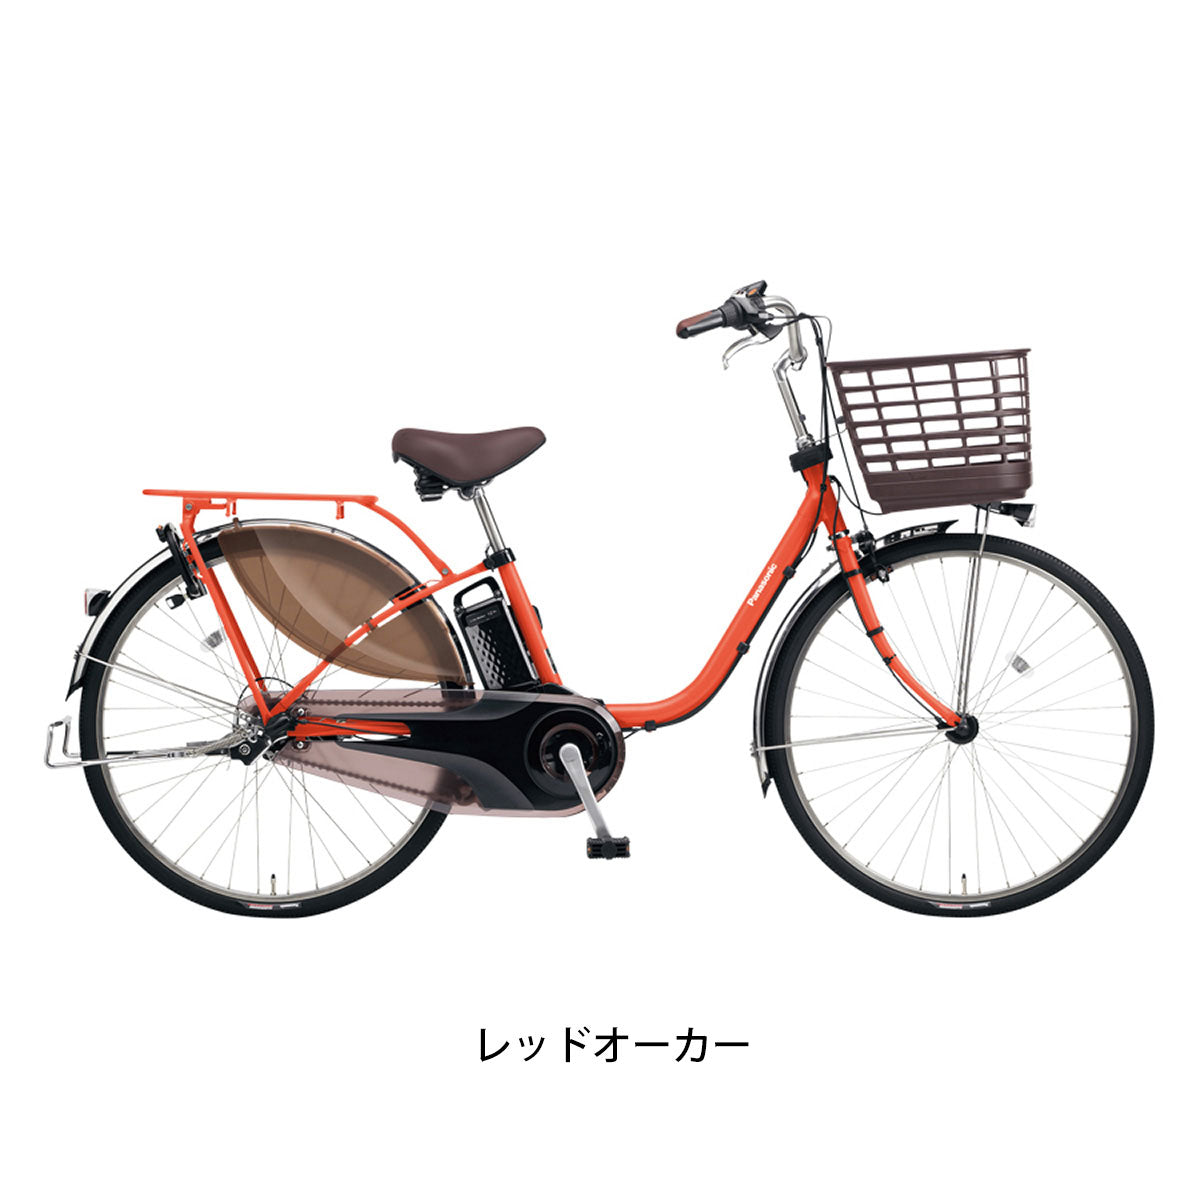 パナソニック 電動自転車 アシスト自転車 Panasonic 3段変速  BE-FM631